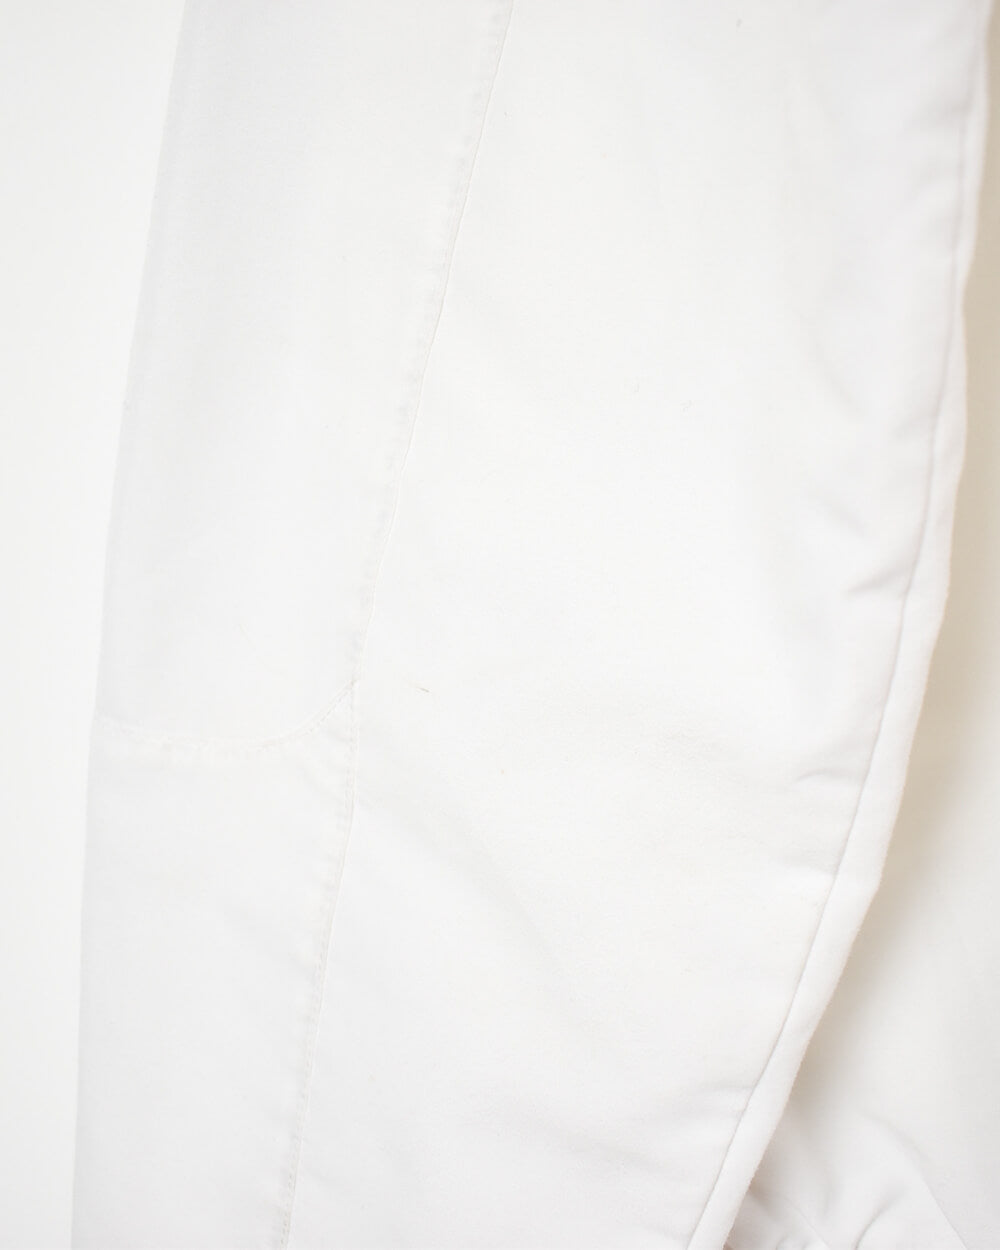 White Adidas Windbreaker Jacket - X-Large